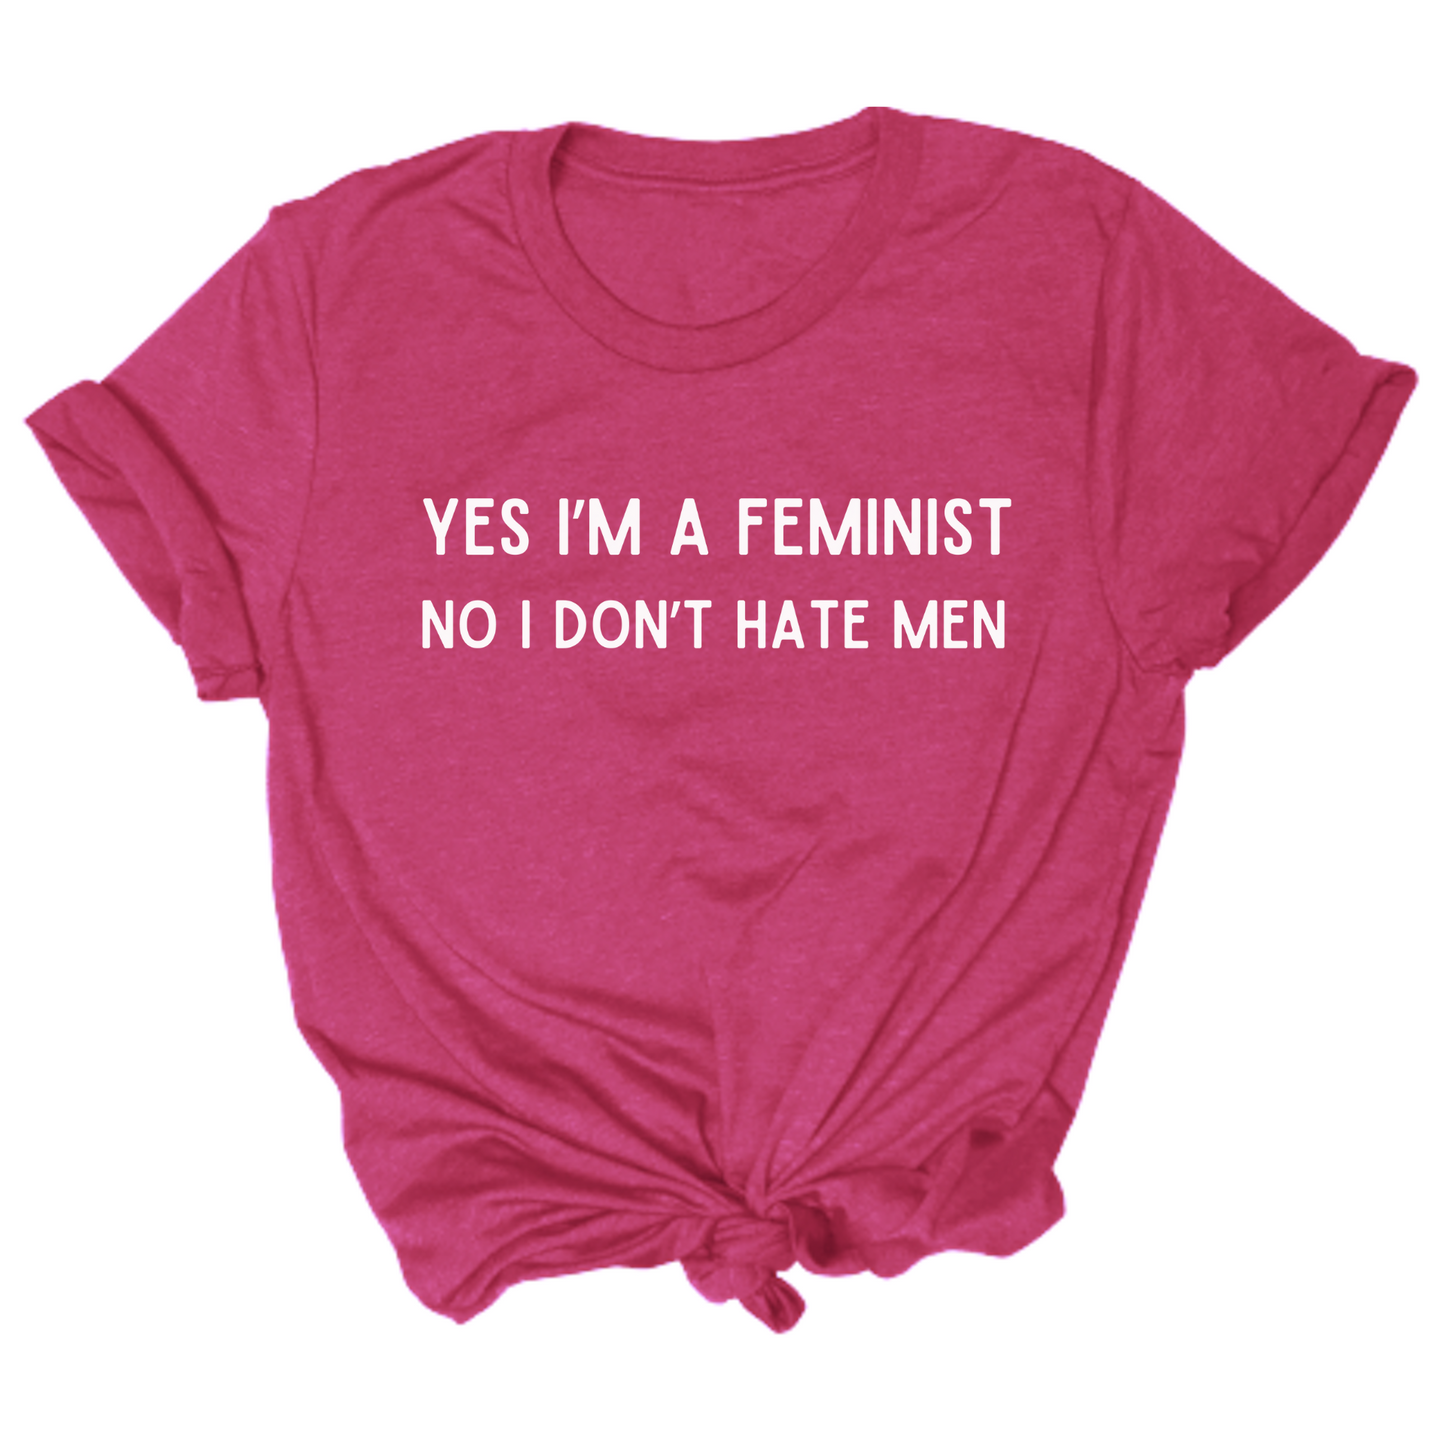 Yes I'm A Feminist Tshirt